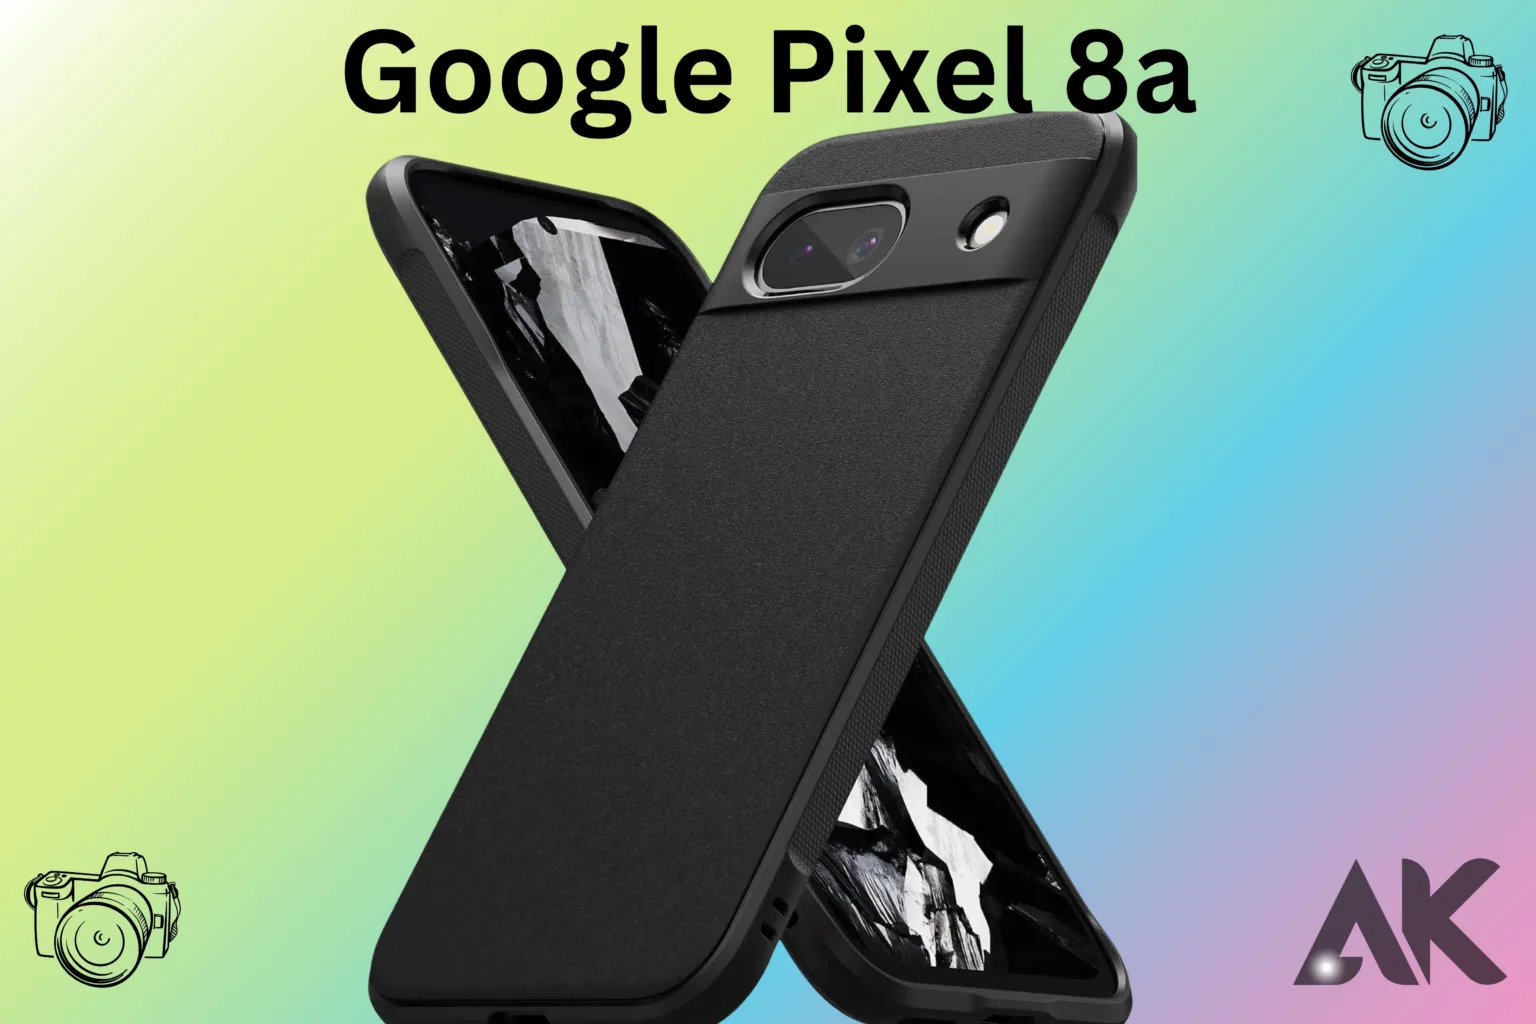 Google Pixel 8a color options